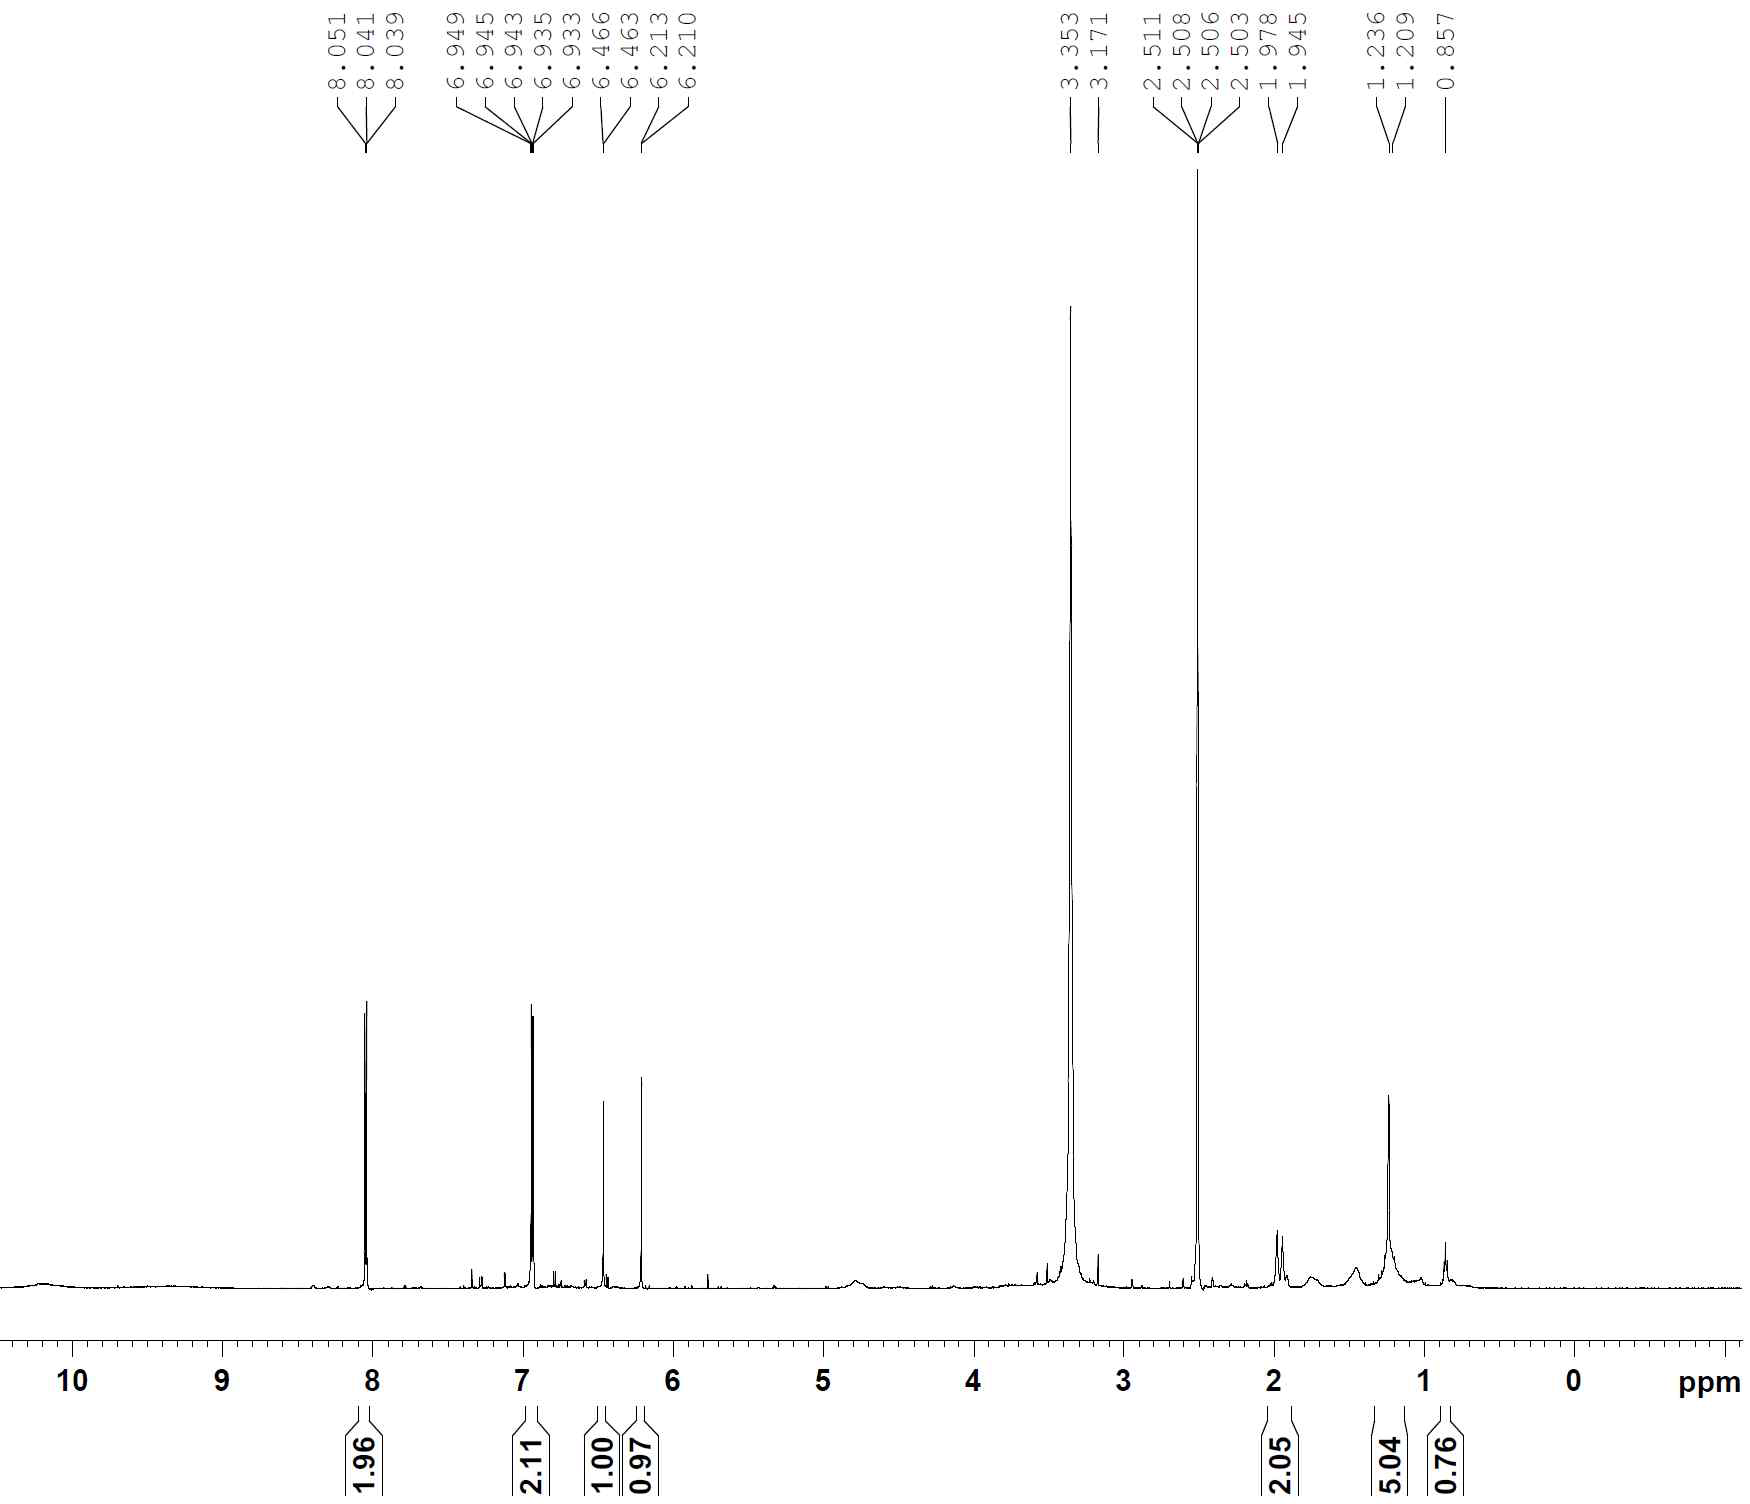 1H-NMR spectrum of compound 13